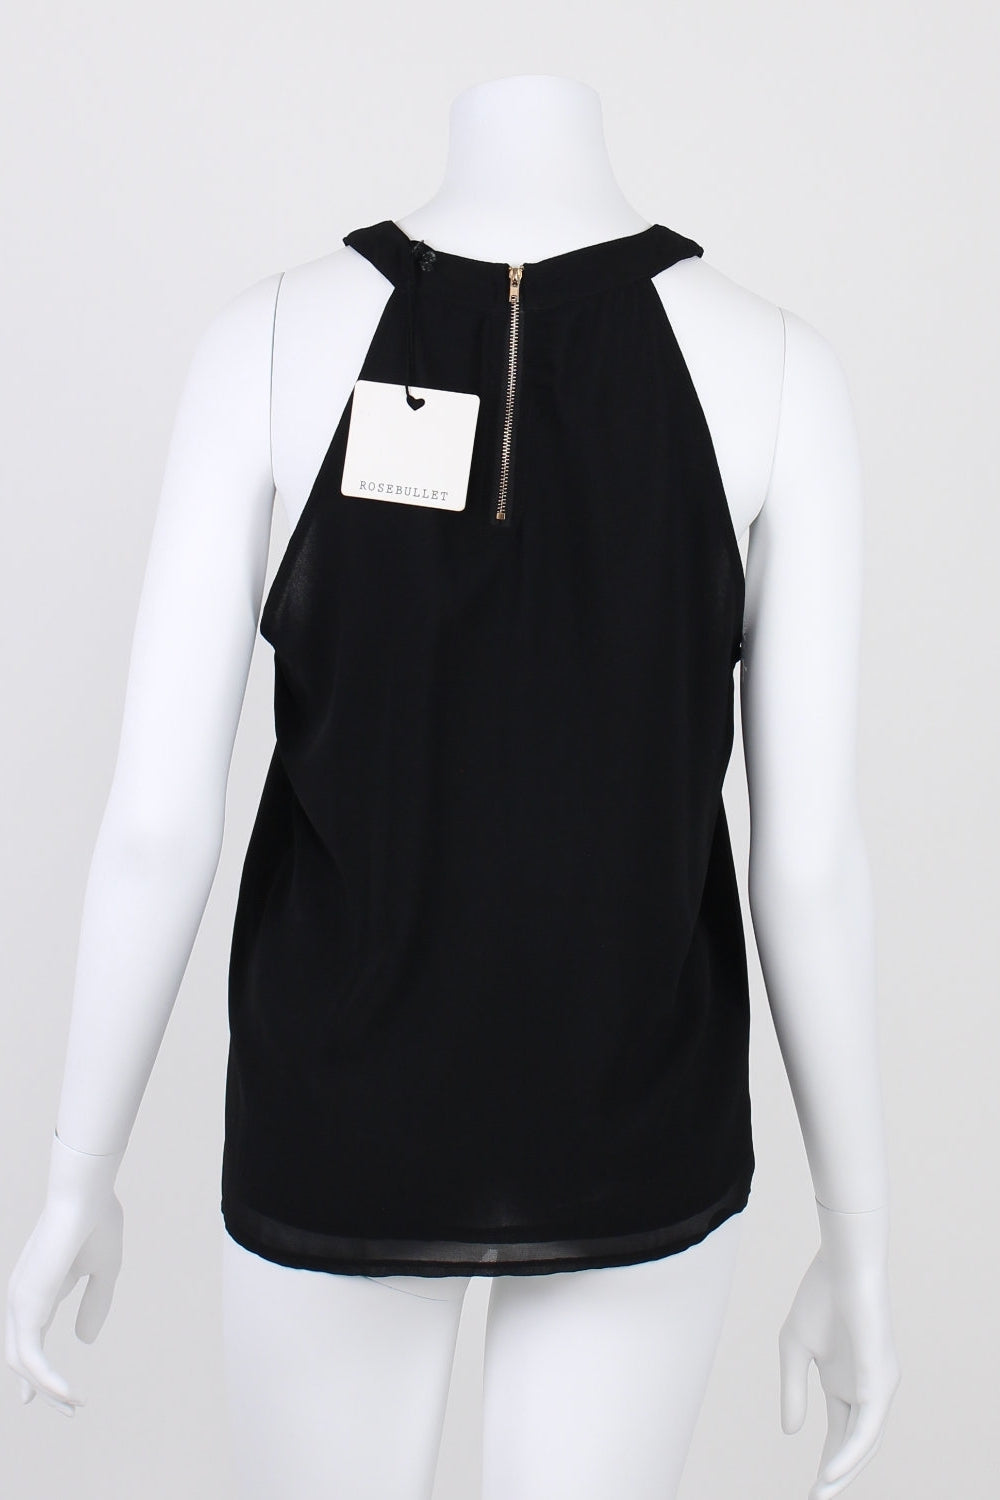 Rosebullet Black Sleeveless Sheer Shirt 12